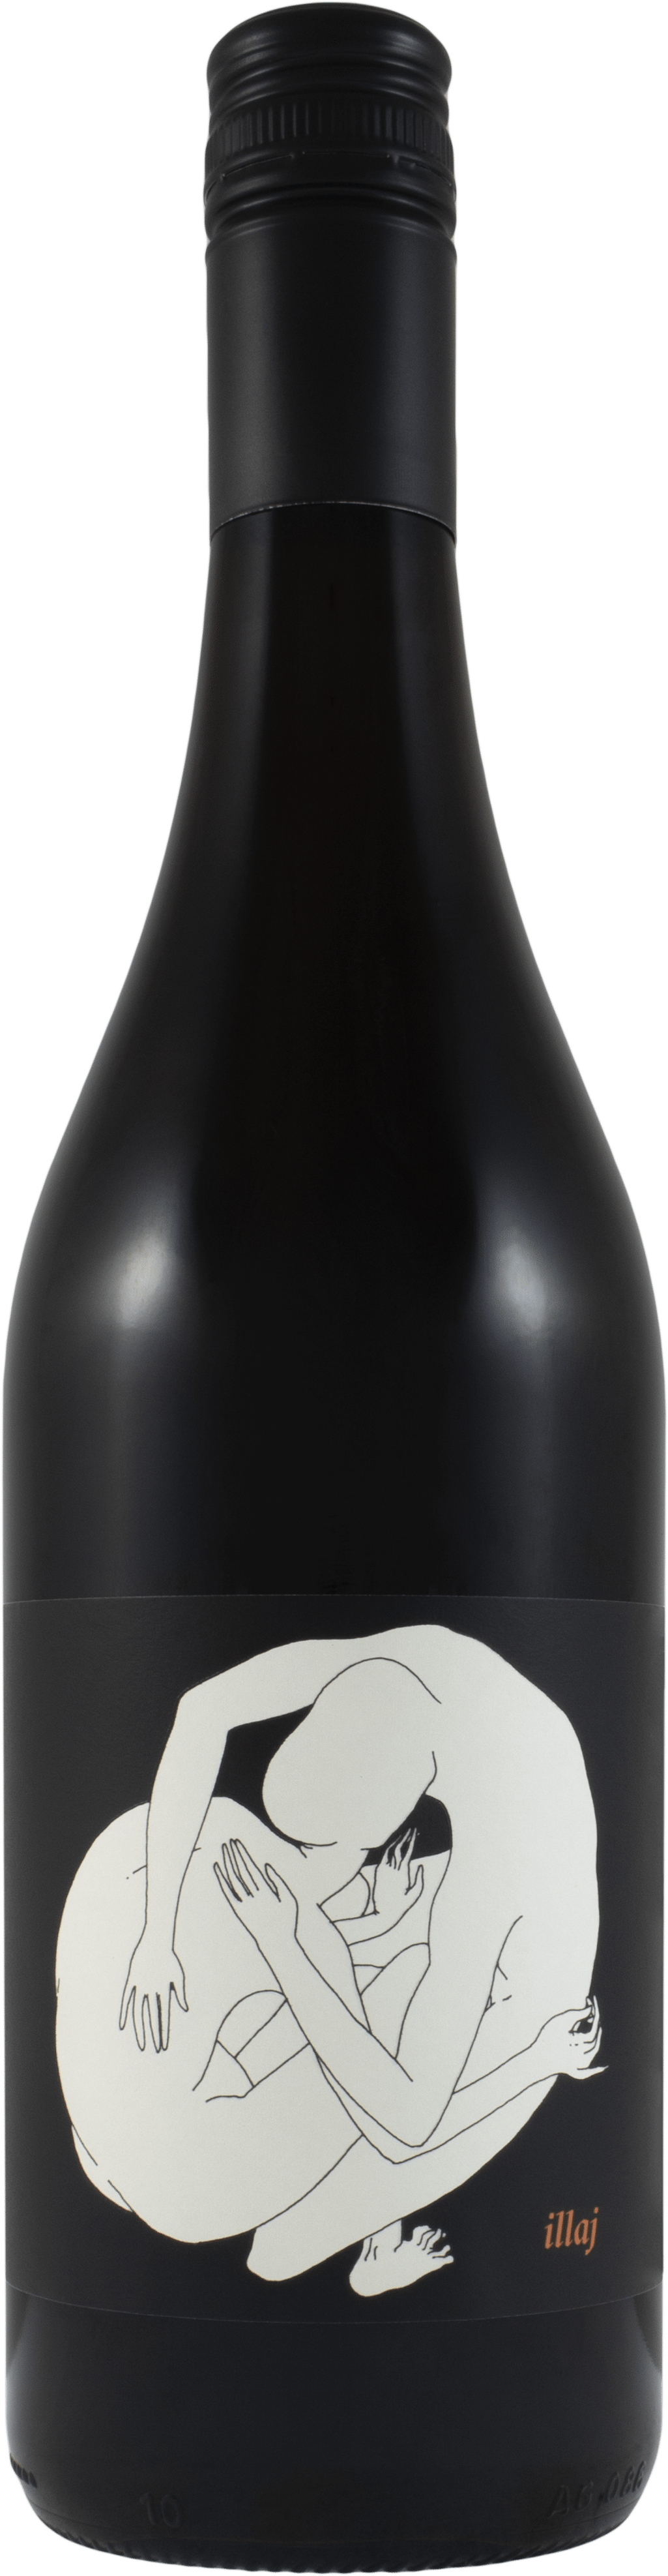 2017 Jamsheed Illaj Pinot Noir